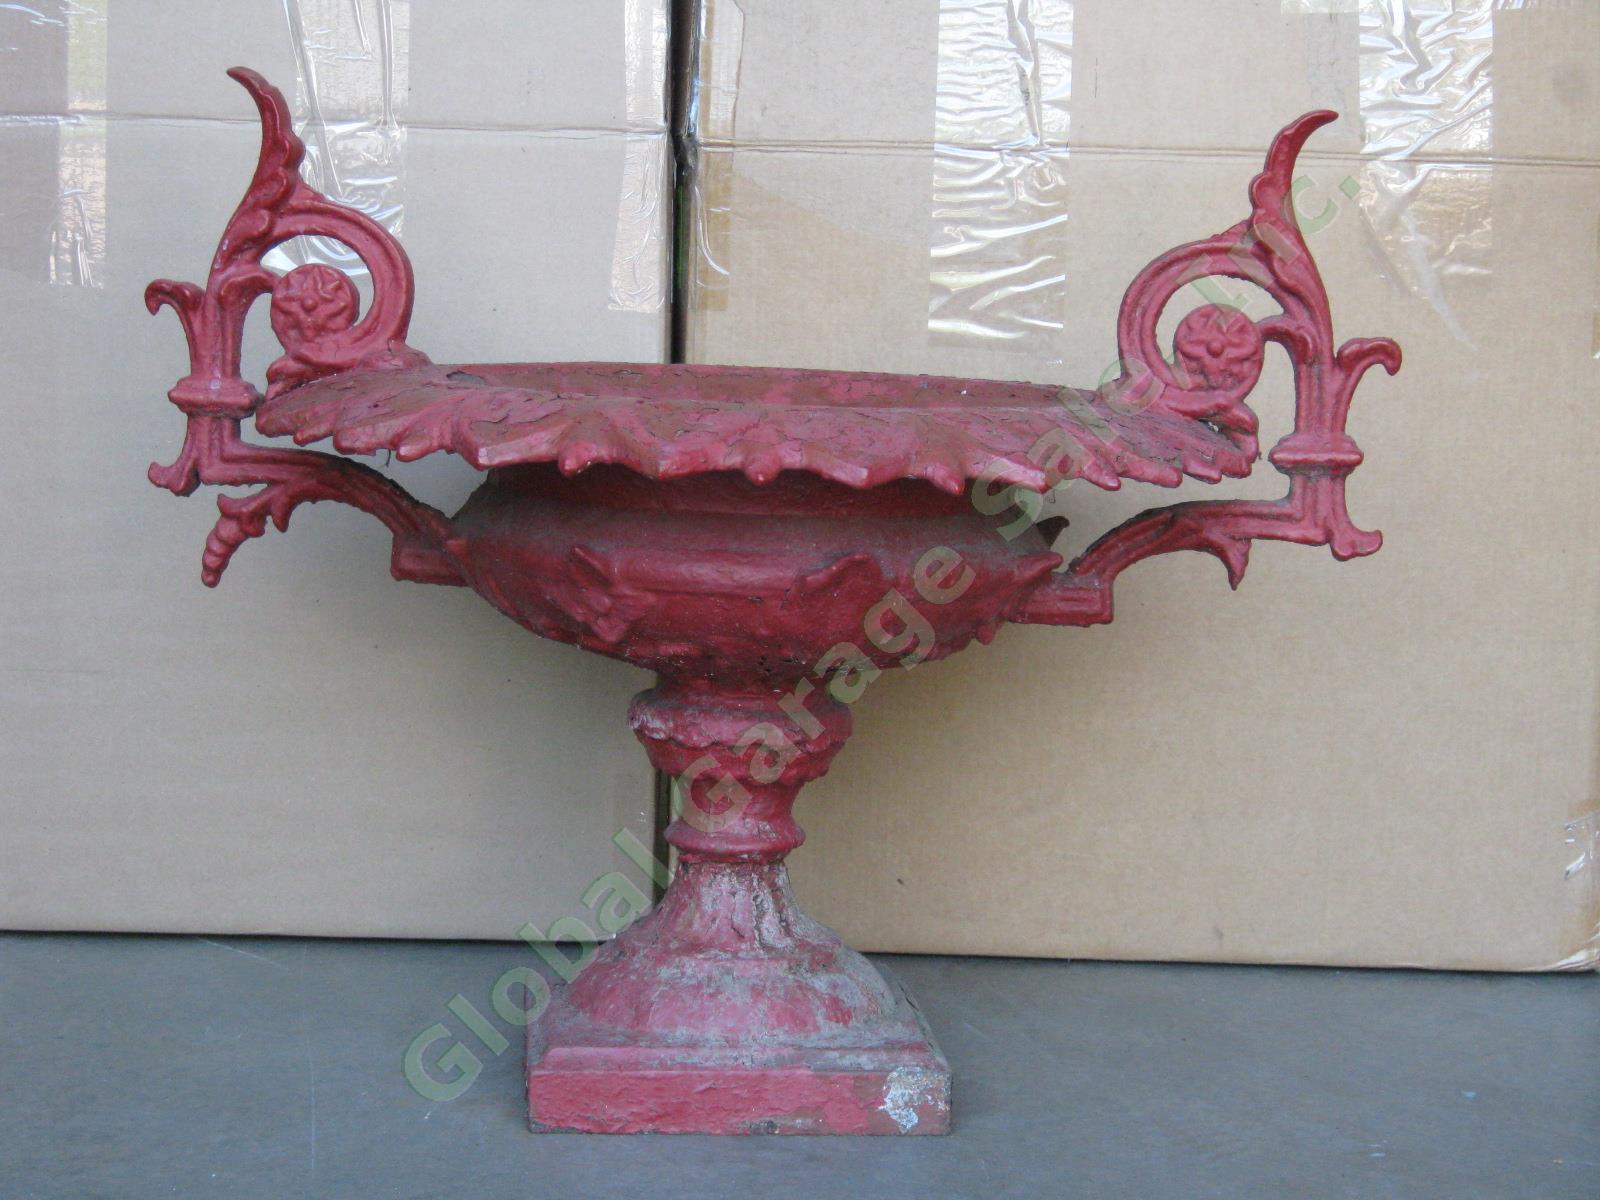 Gorgeous Vintage Antique Ornate Cast Iron Garden Urn Planter Bird Bath 24" Tall